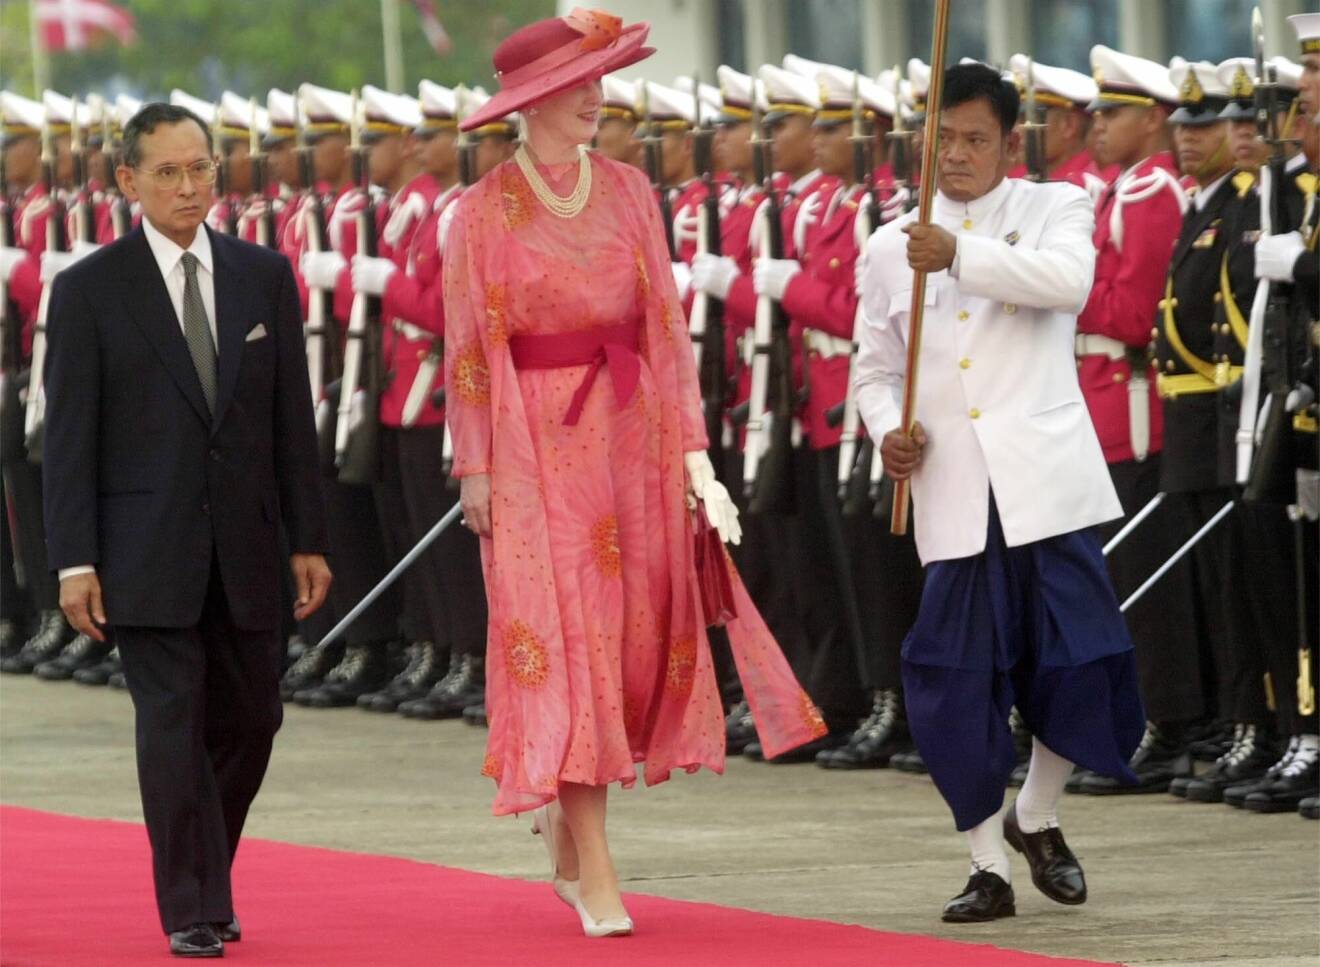 Drottning Margrete II i thailand 2001